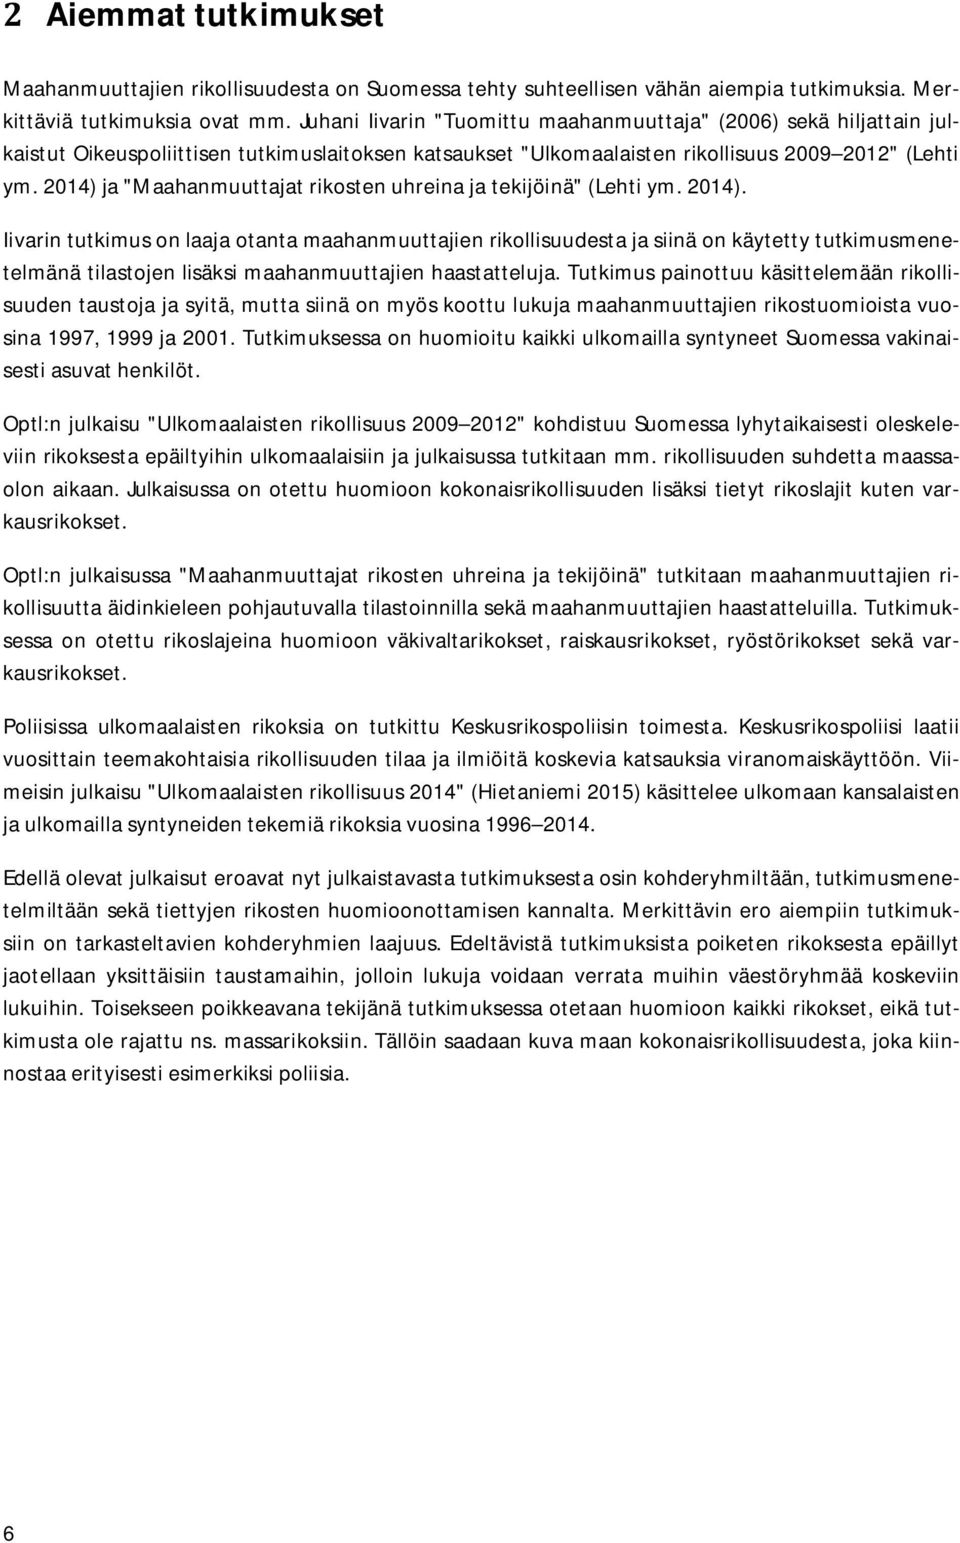 2014) ja "Maahanmuuttajat rikosten uhreina ja tekijöinä" (Lehti ym. 2014).